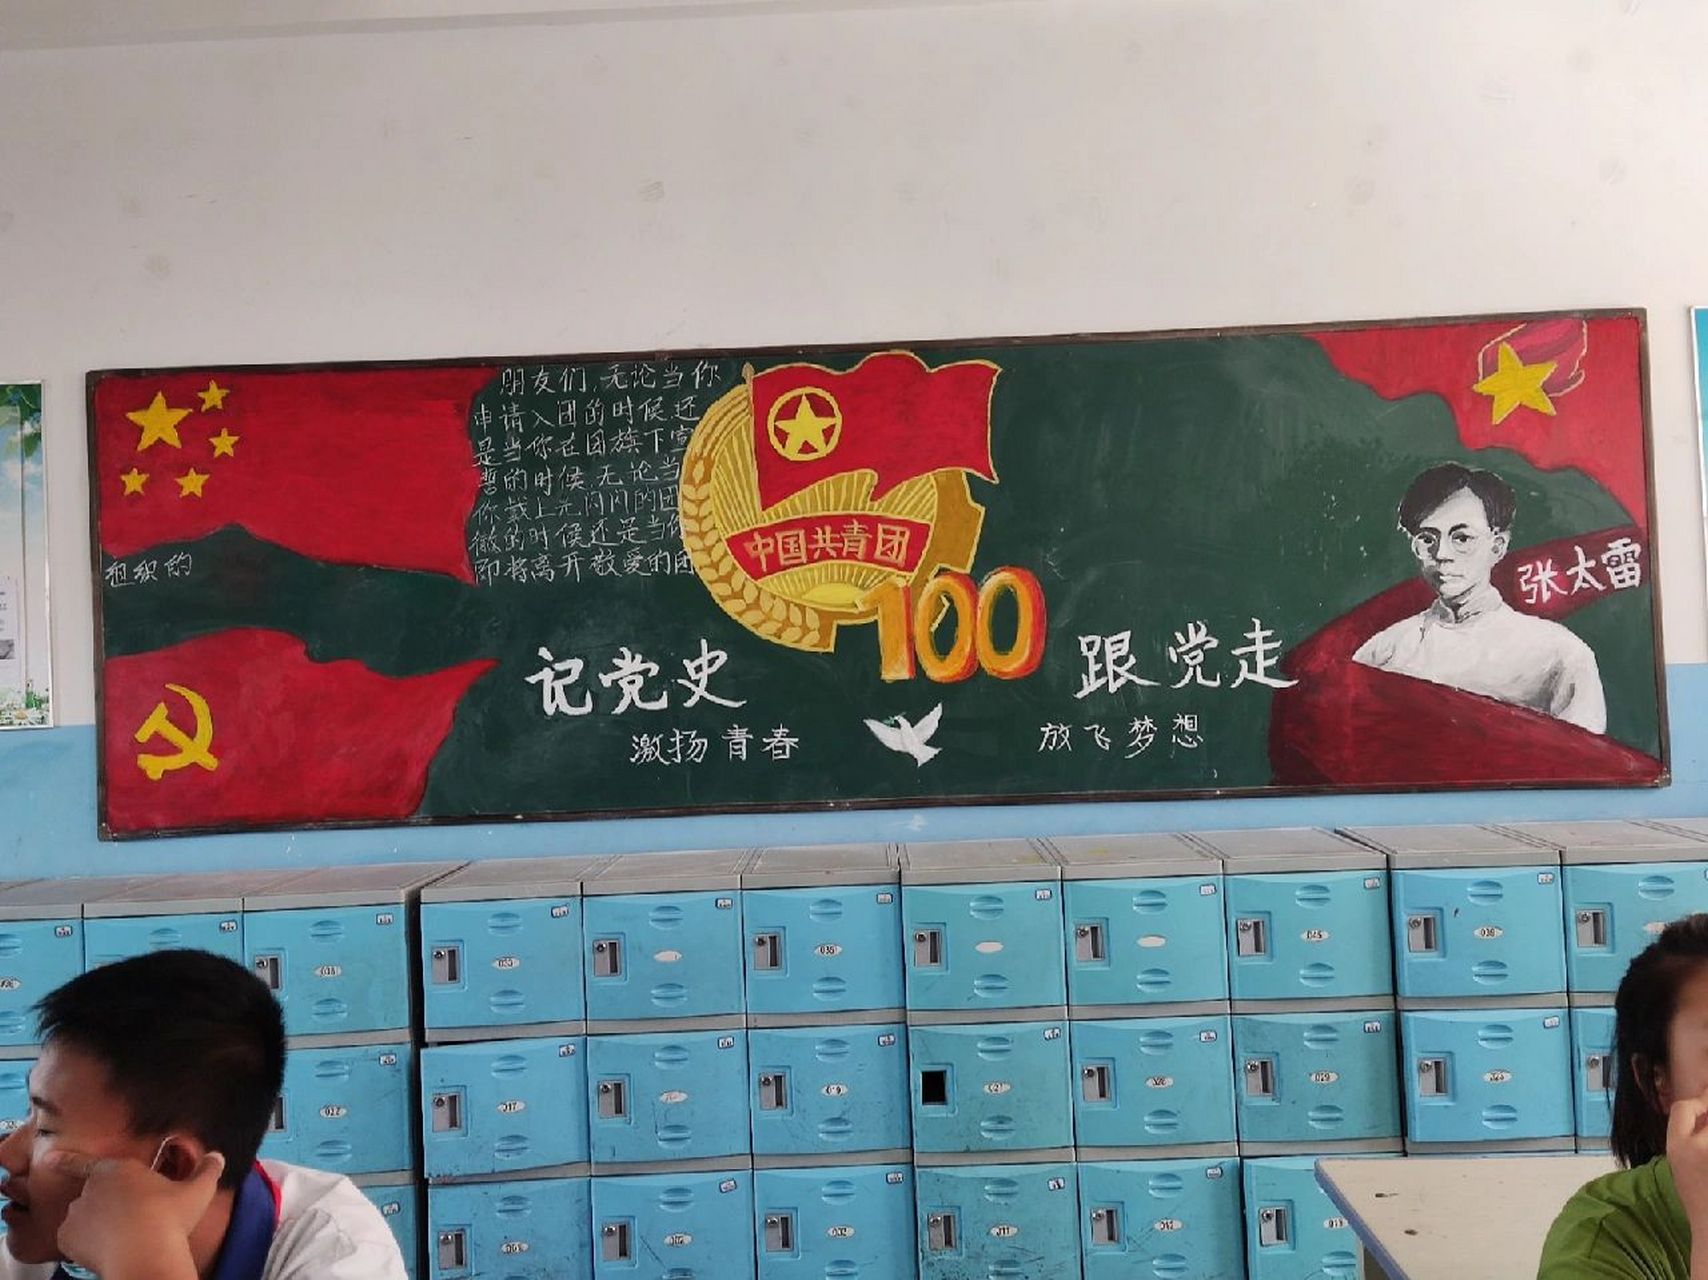 中国共青团团徽黑板报图片